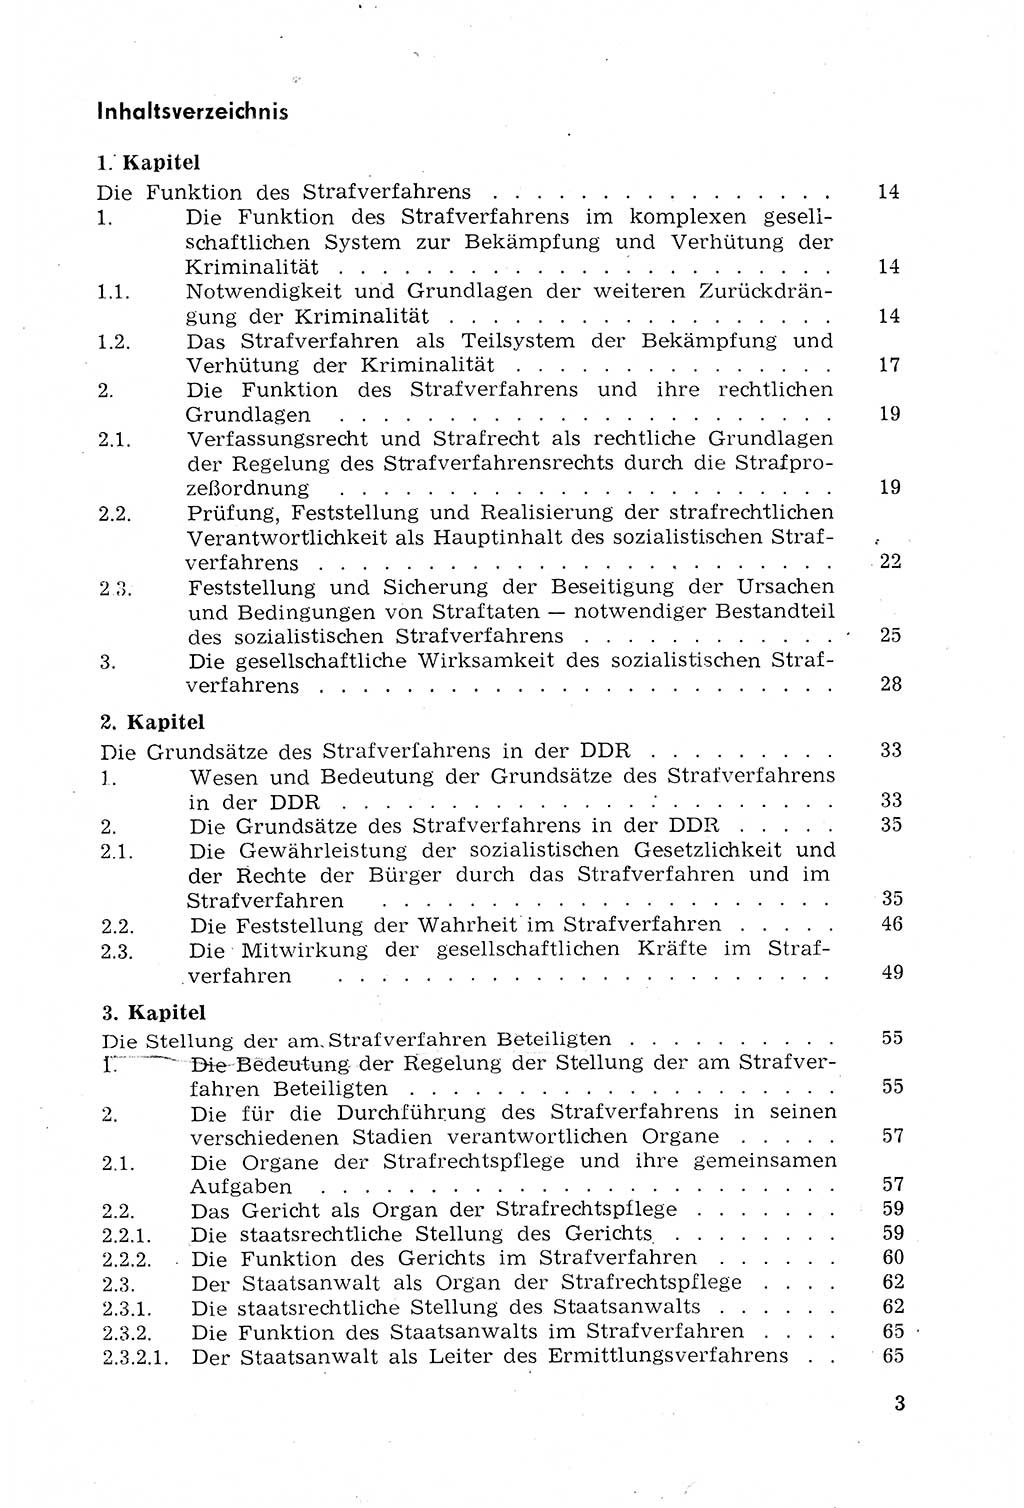 Strafprozeßrecht der DDR (Deutsche Demokratische Republik), Lehrmaterial 1969, Seite 3 (Strafprozeßr. DDR Lehrmat. 1969, S. 3)